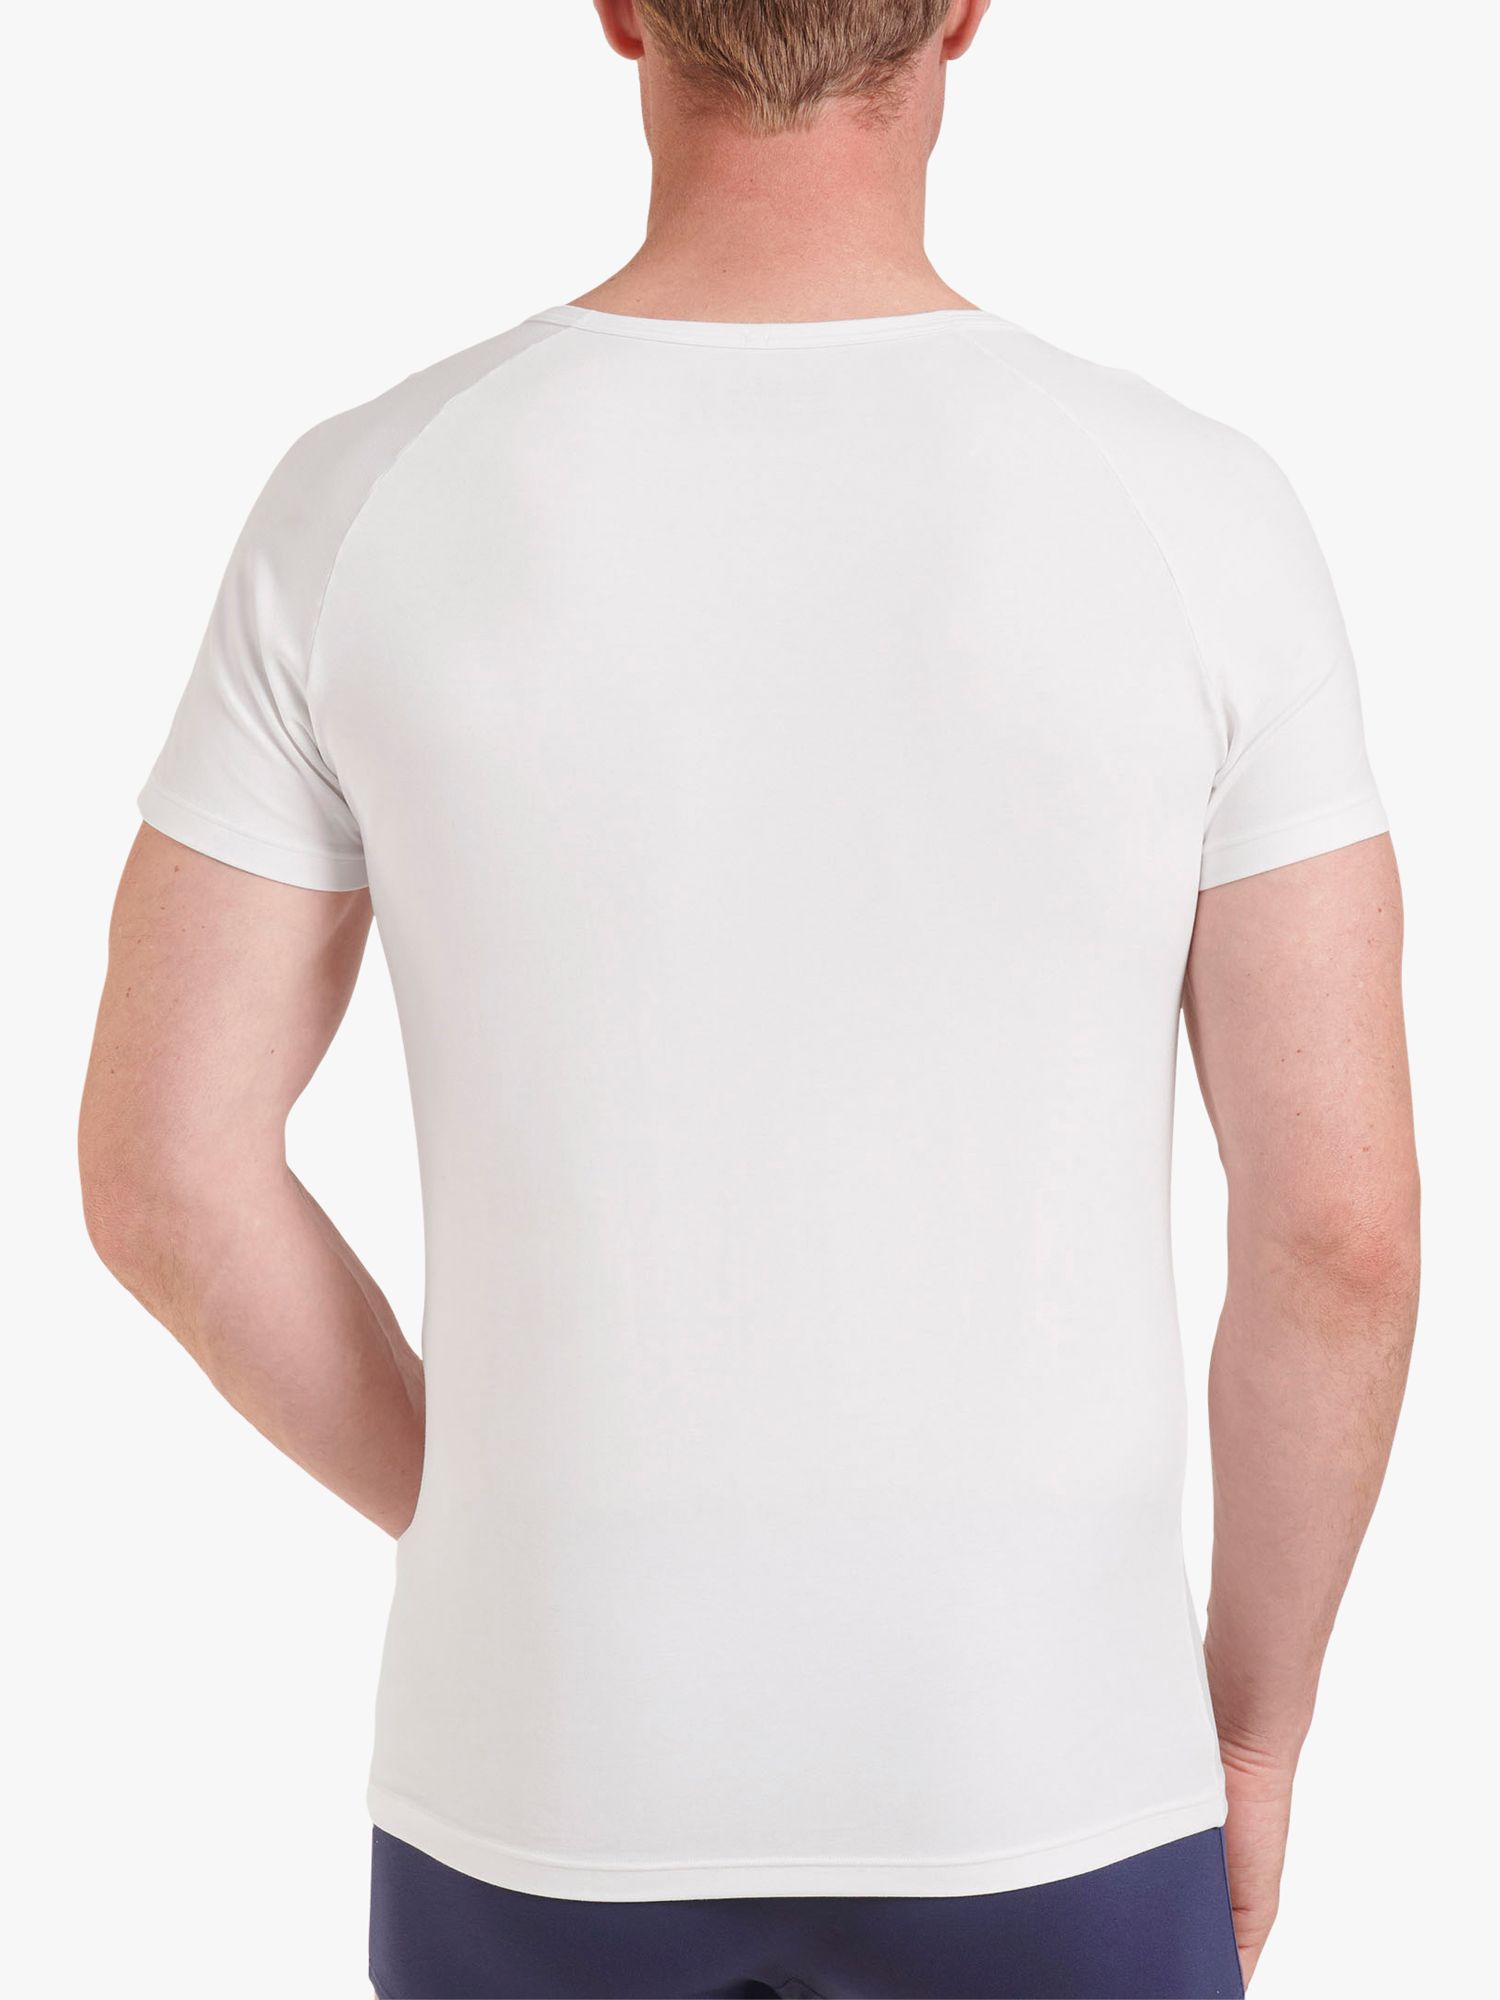 sloggi EVER Soft O-Neck T-Shirt, White, XL